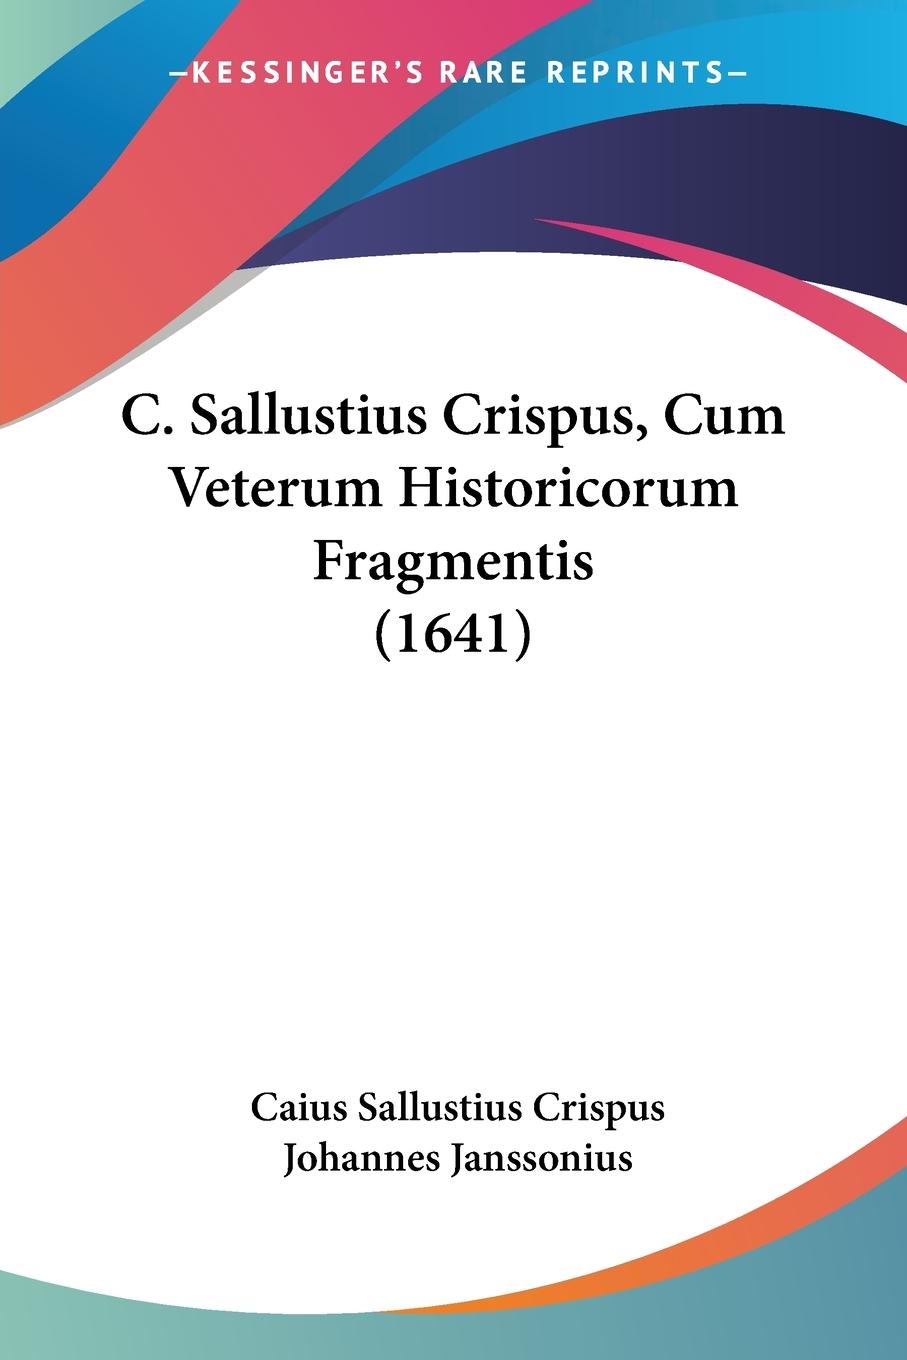 C. Sallustius Crispus, Cum Veterum Historicorum Fragmentis (1641) - Crispus, Caius Sallustius|Janssonius, Johannes